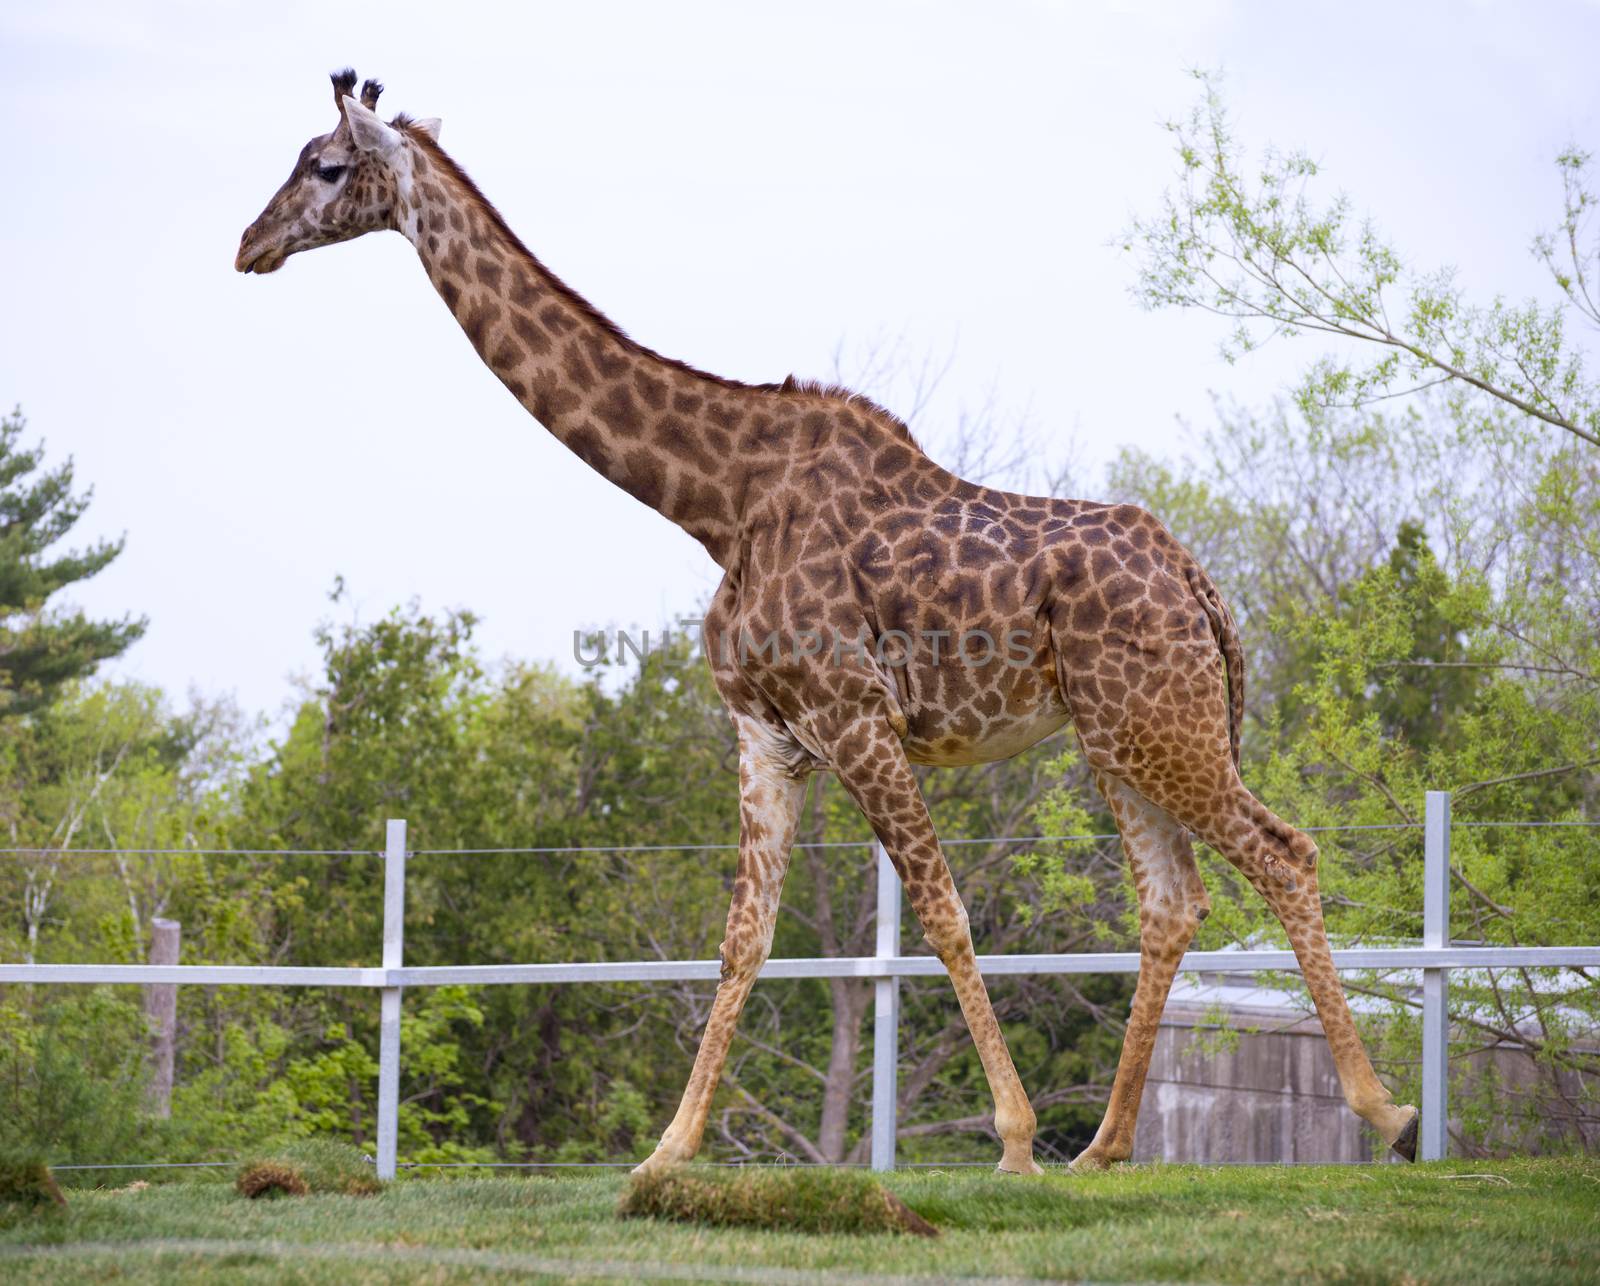 Young giraffe walking in toronto zoo